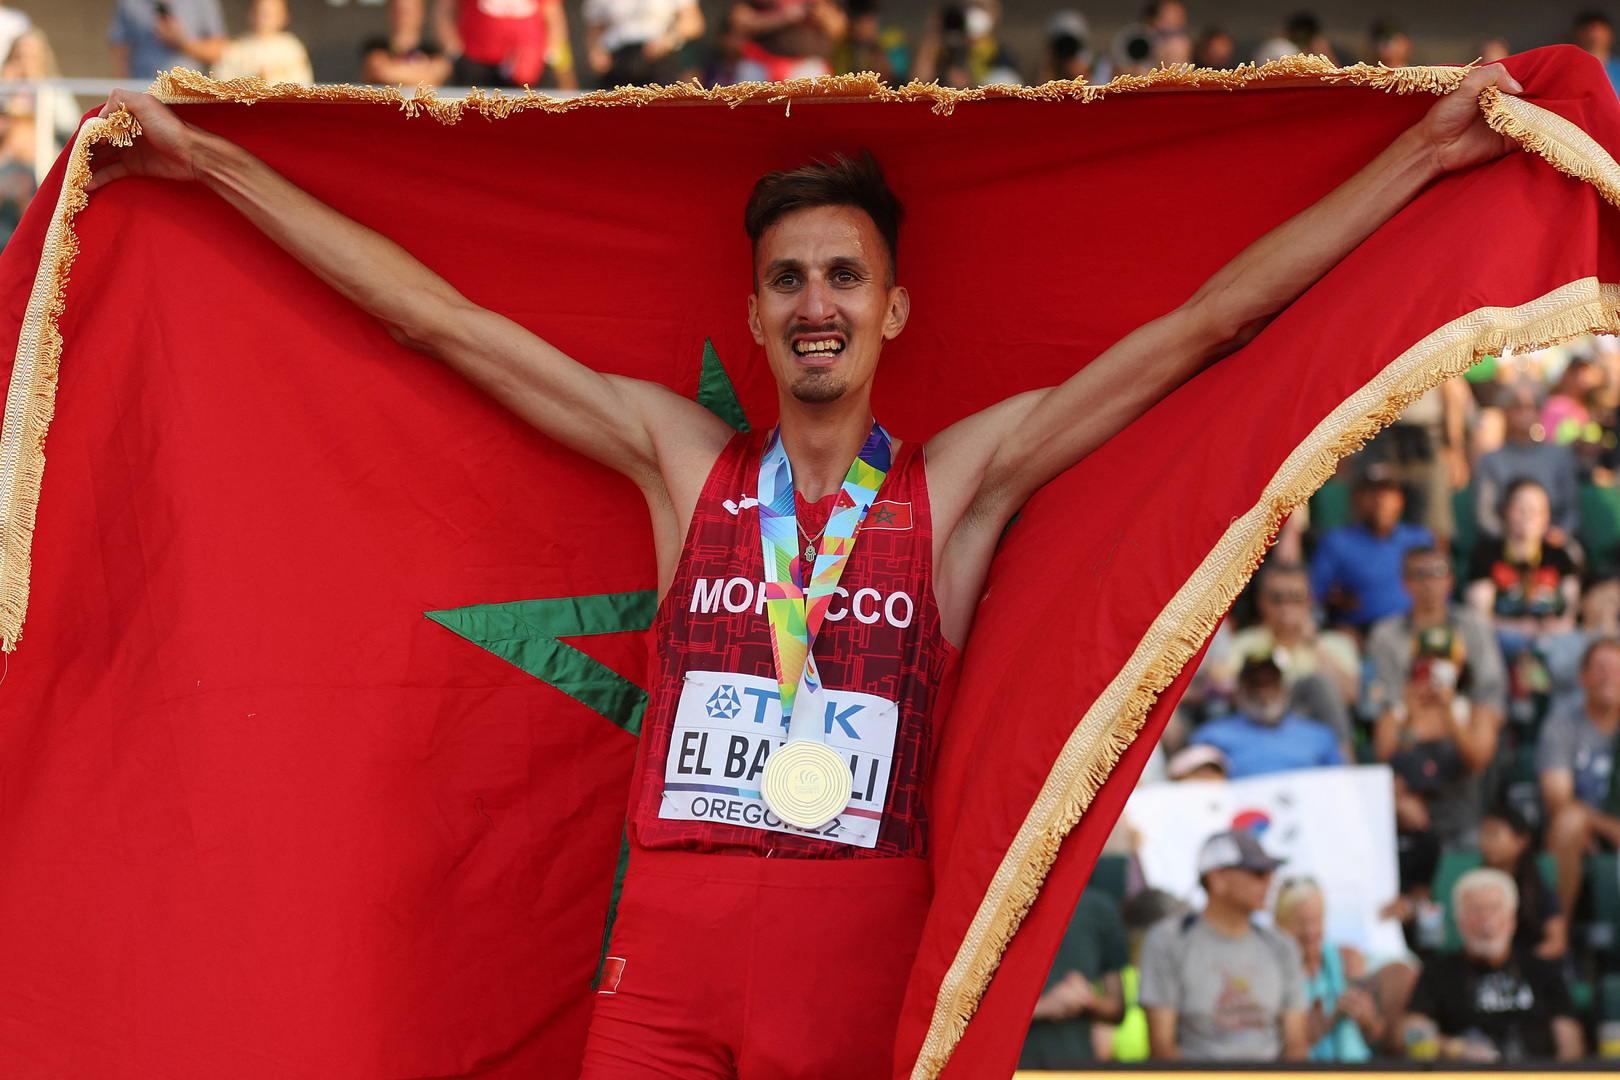 المغربي البقالي يضيف اللقب العالمي إلى الأولمبي وينهي السيطرة الكينية في بطولة العالم لألعاب القوى